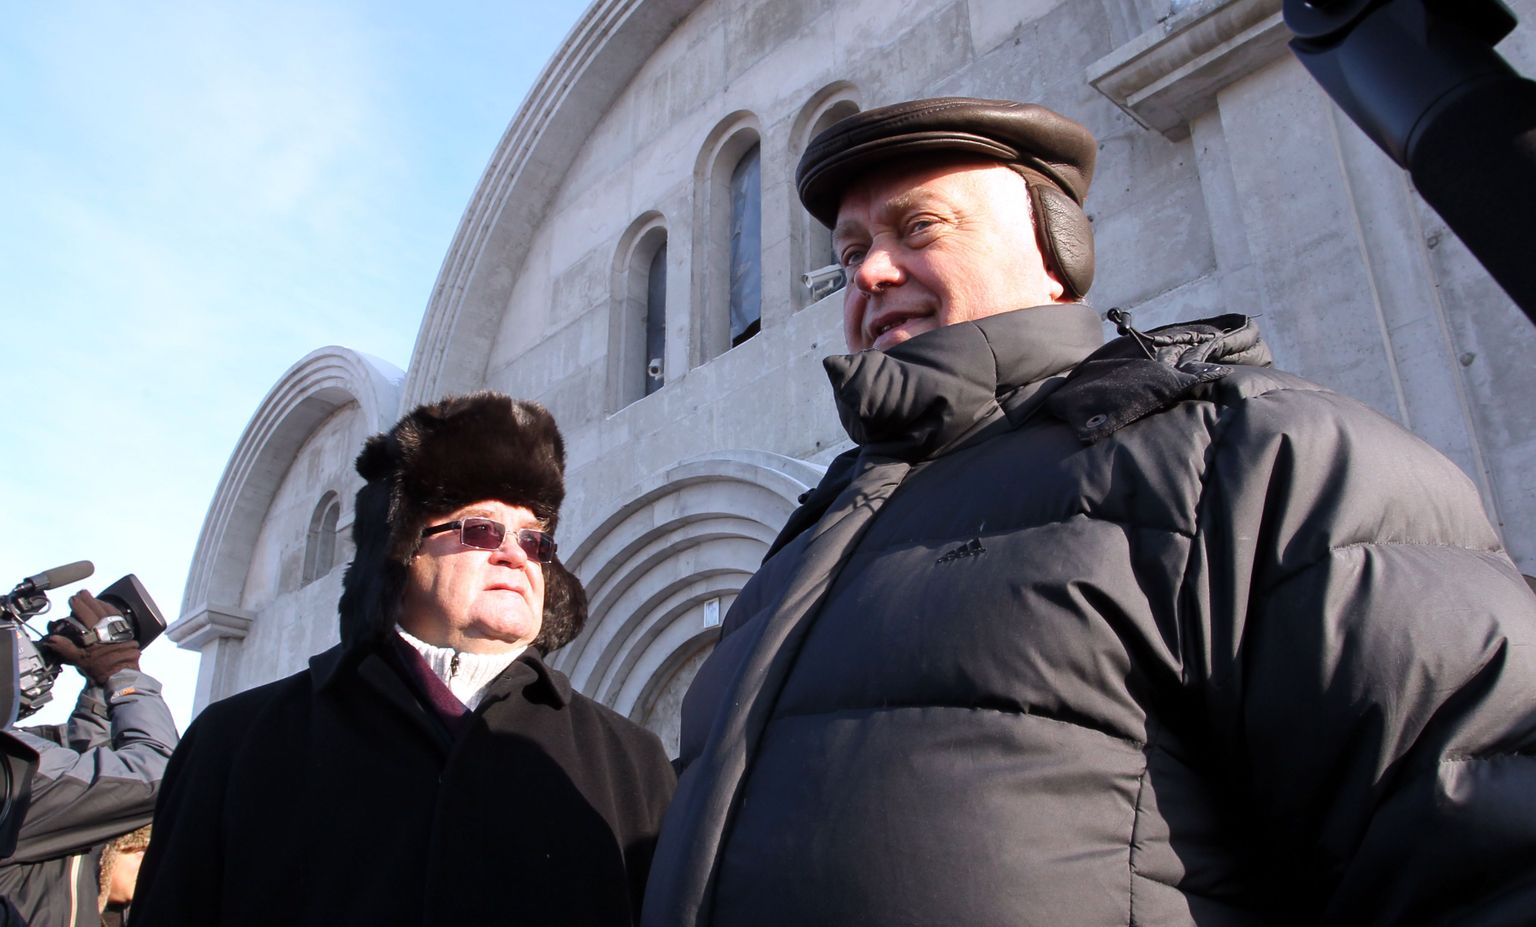 Venemaa Raudteede president Vladimir Jakunin (paremal) Lasnamäe kiriku juures veebruaris 2011. Tema paremal käel seisab Tallinna linnapea Edgar Savisaar.